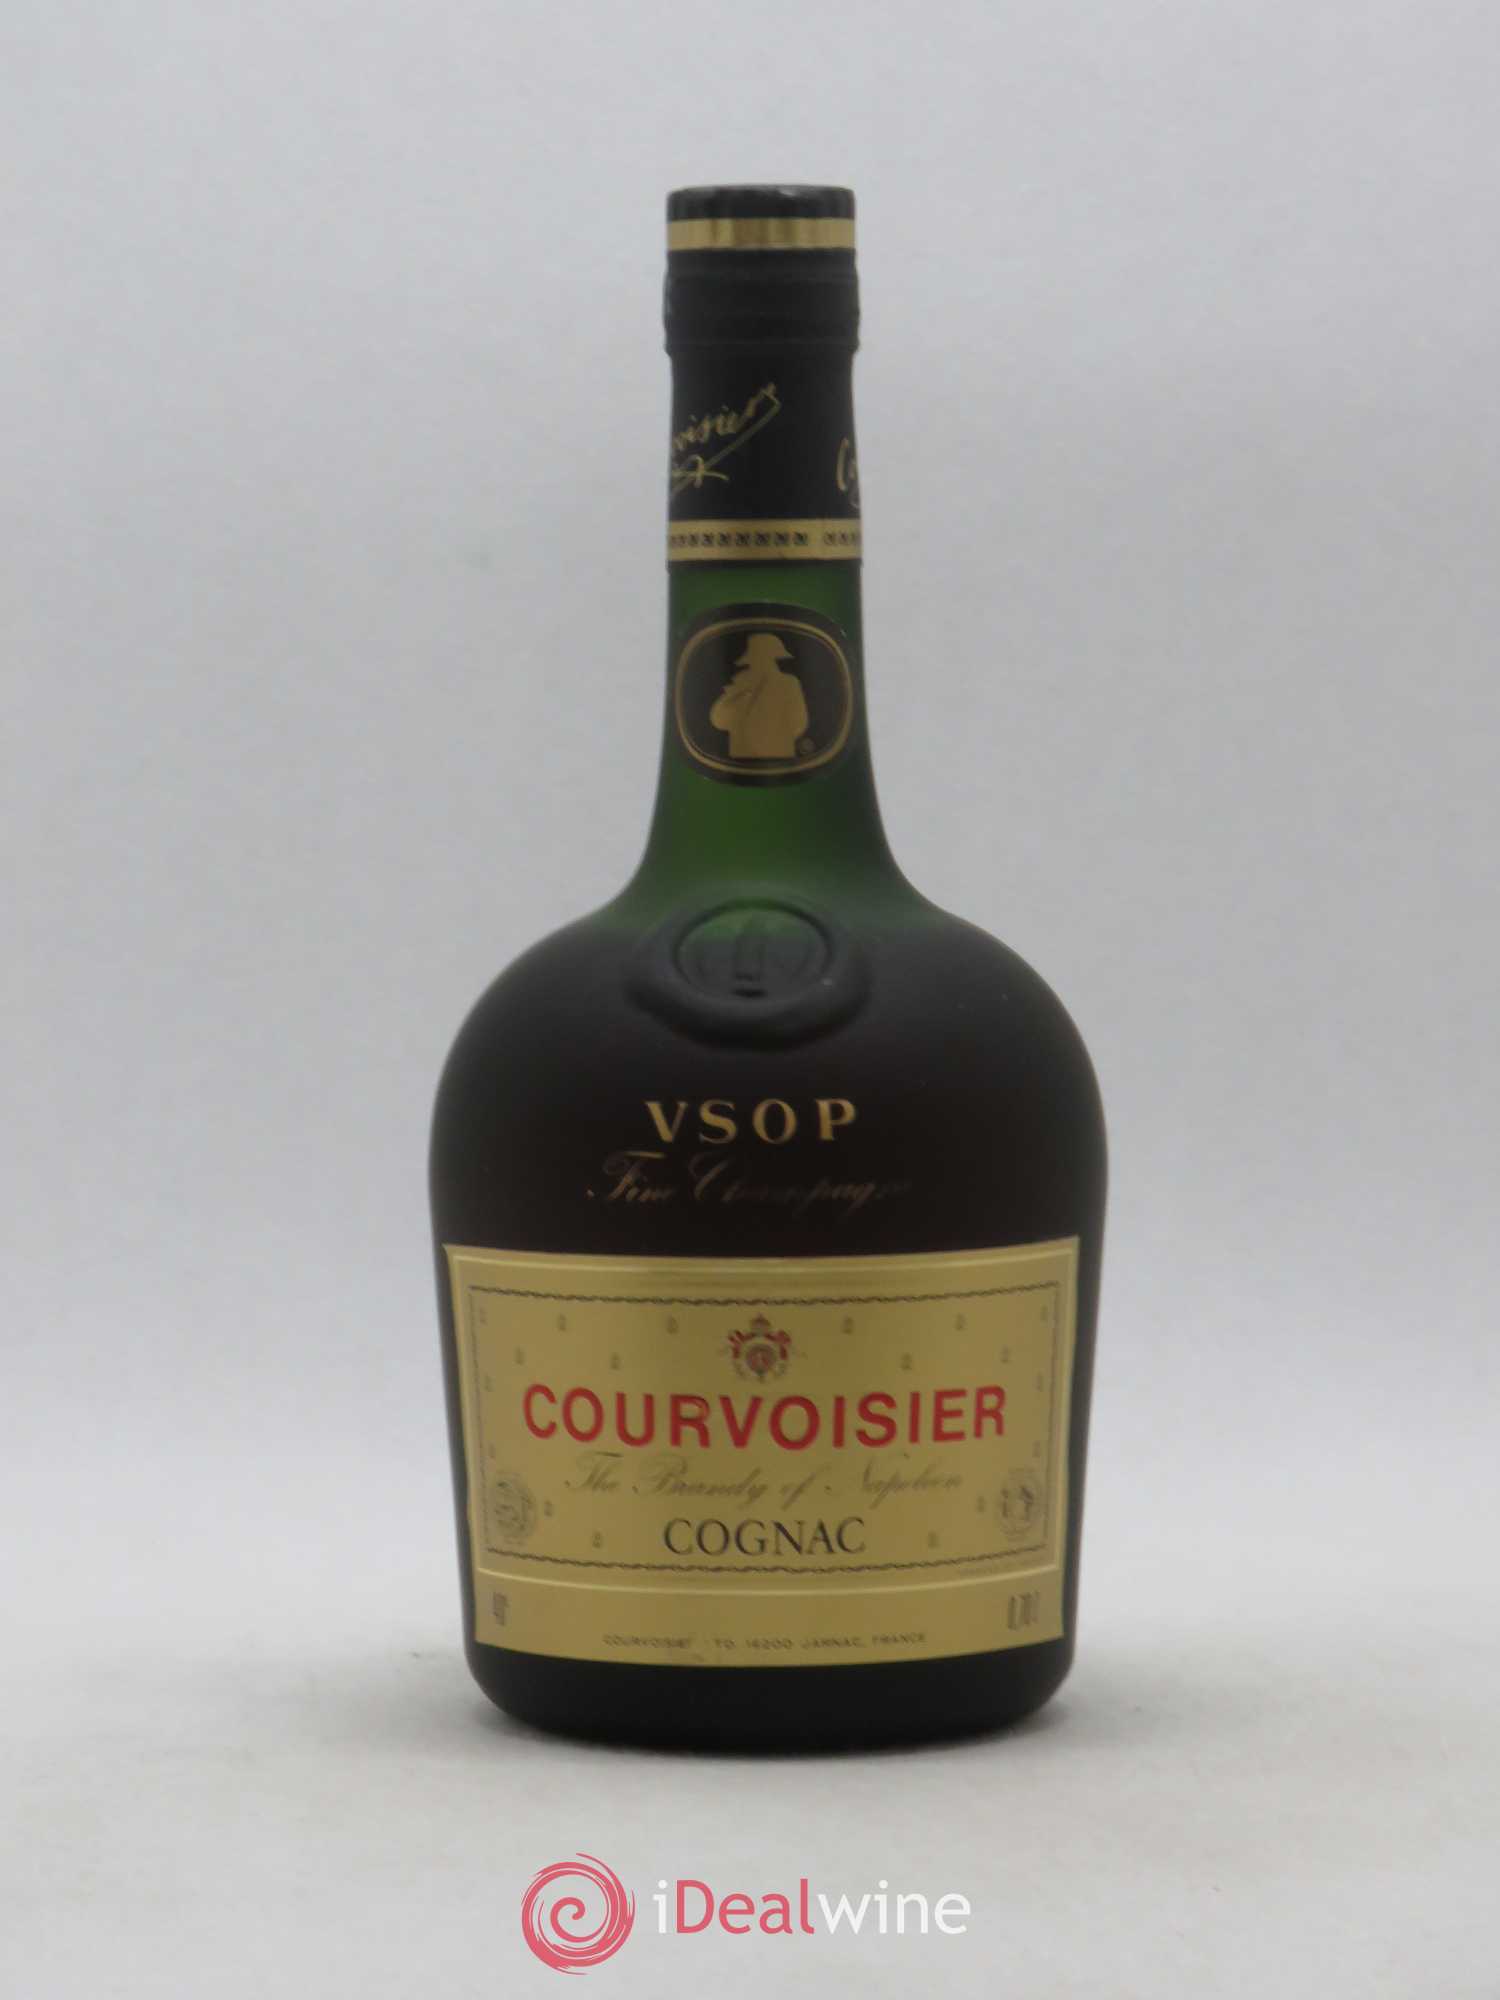 fine champagne VSOP 2 pubs presse cognac courvoisier : 3 etoiles 4 napoleon 